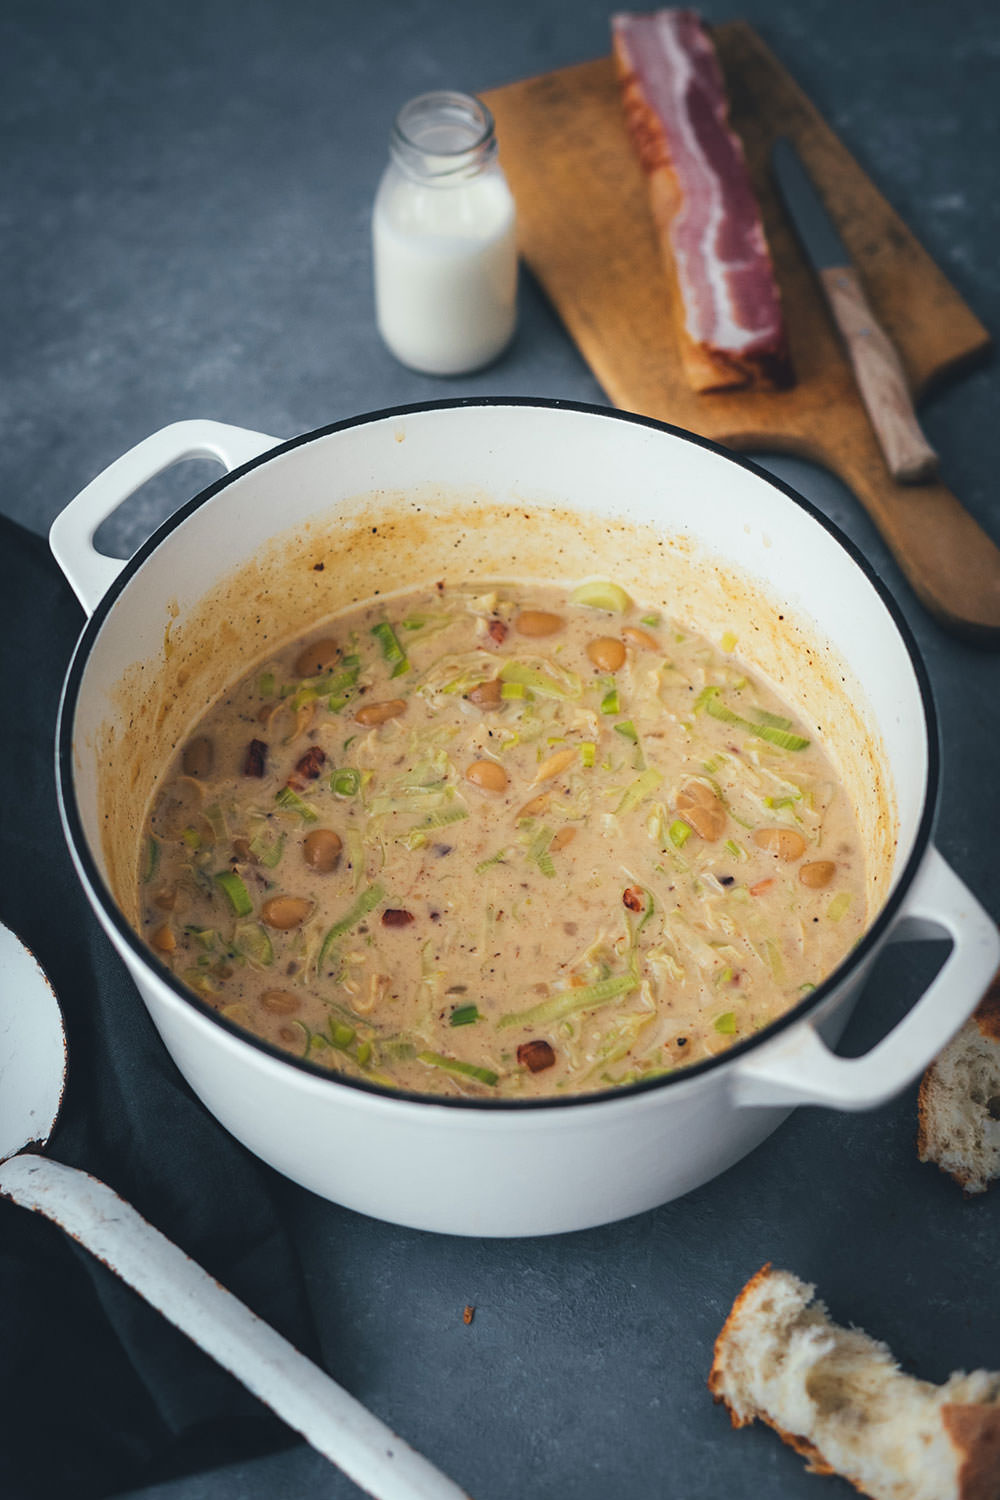 Rezept für cremige Lauch-Suppe mit Speck und weißen Bohnen | moeyskitchen.com #suppe #lauch #porree #lauchsuppe #herbst #herbstküche #saisonal #regional #saisonalschmecktsbesser #foodblog #rezept